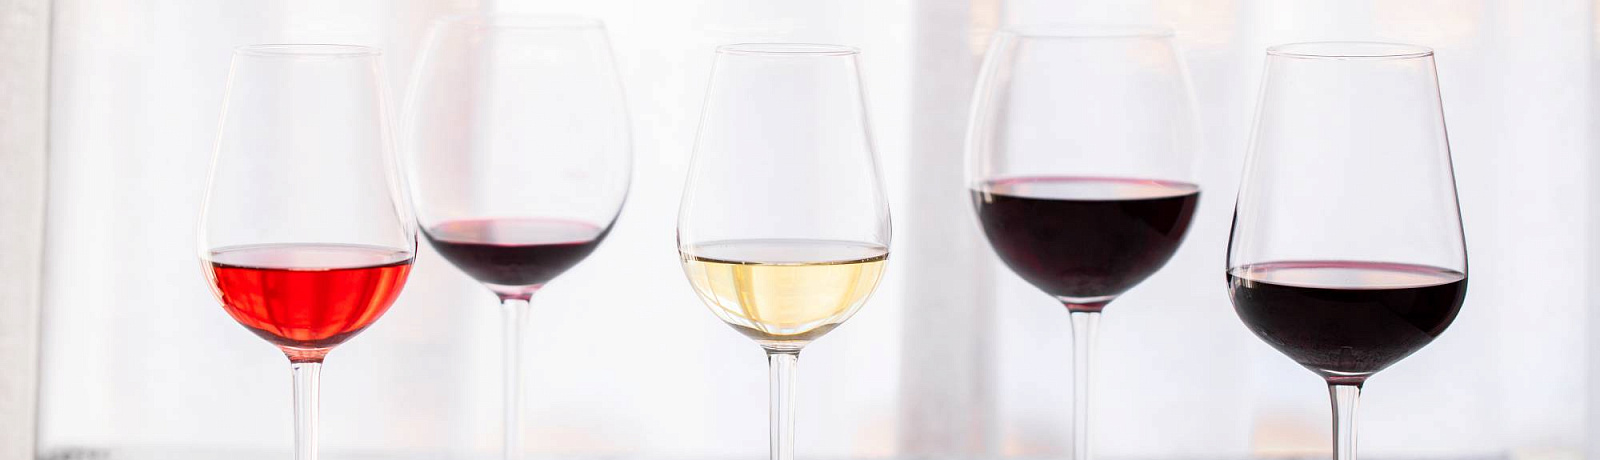 Новые горизонты: до -45% на вино и бокалы Riedel в подарок